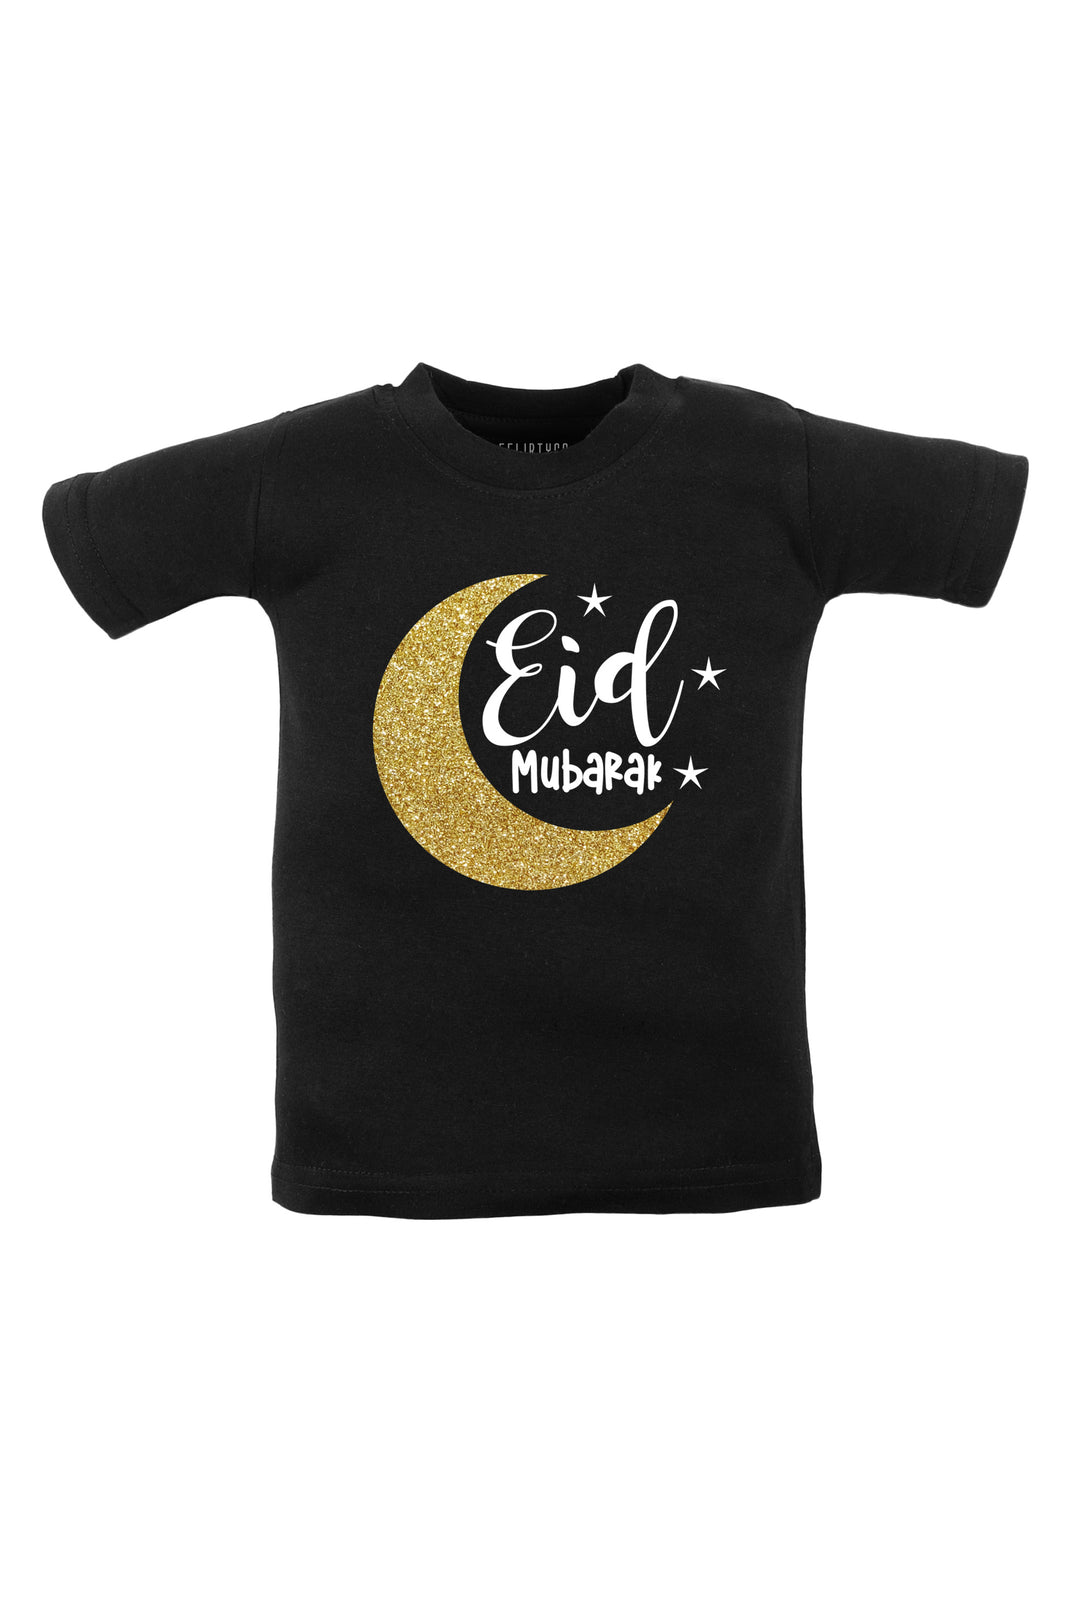 Eid Mubarak Kids T Shirt